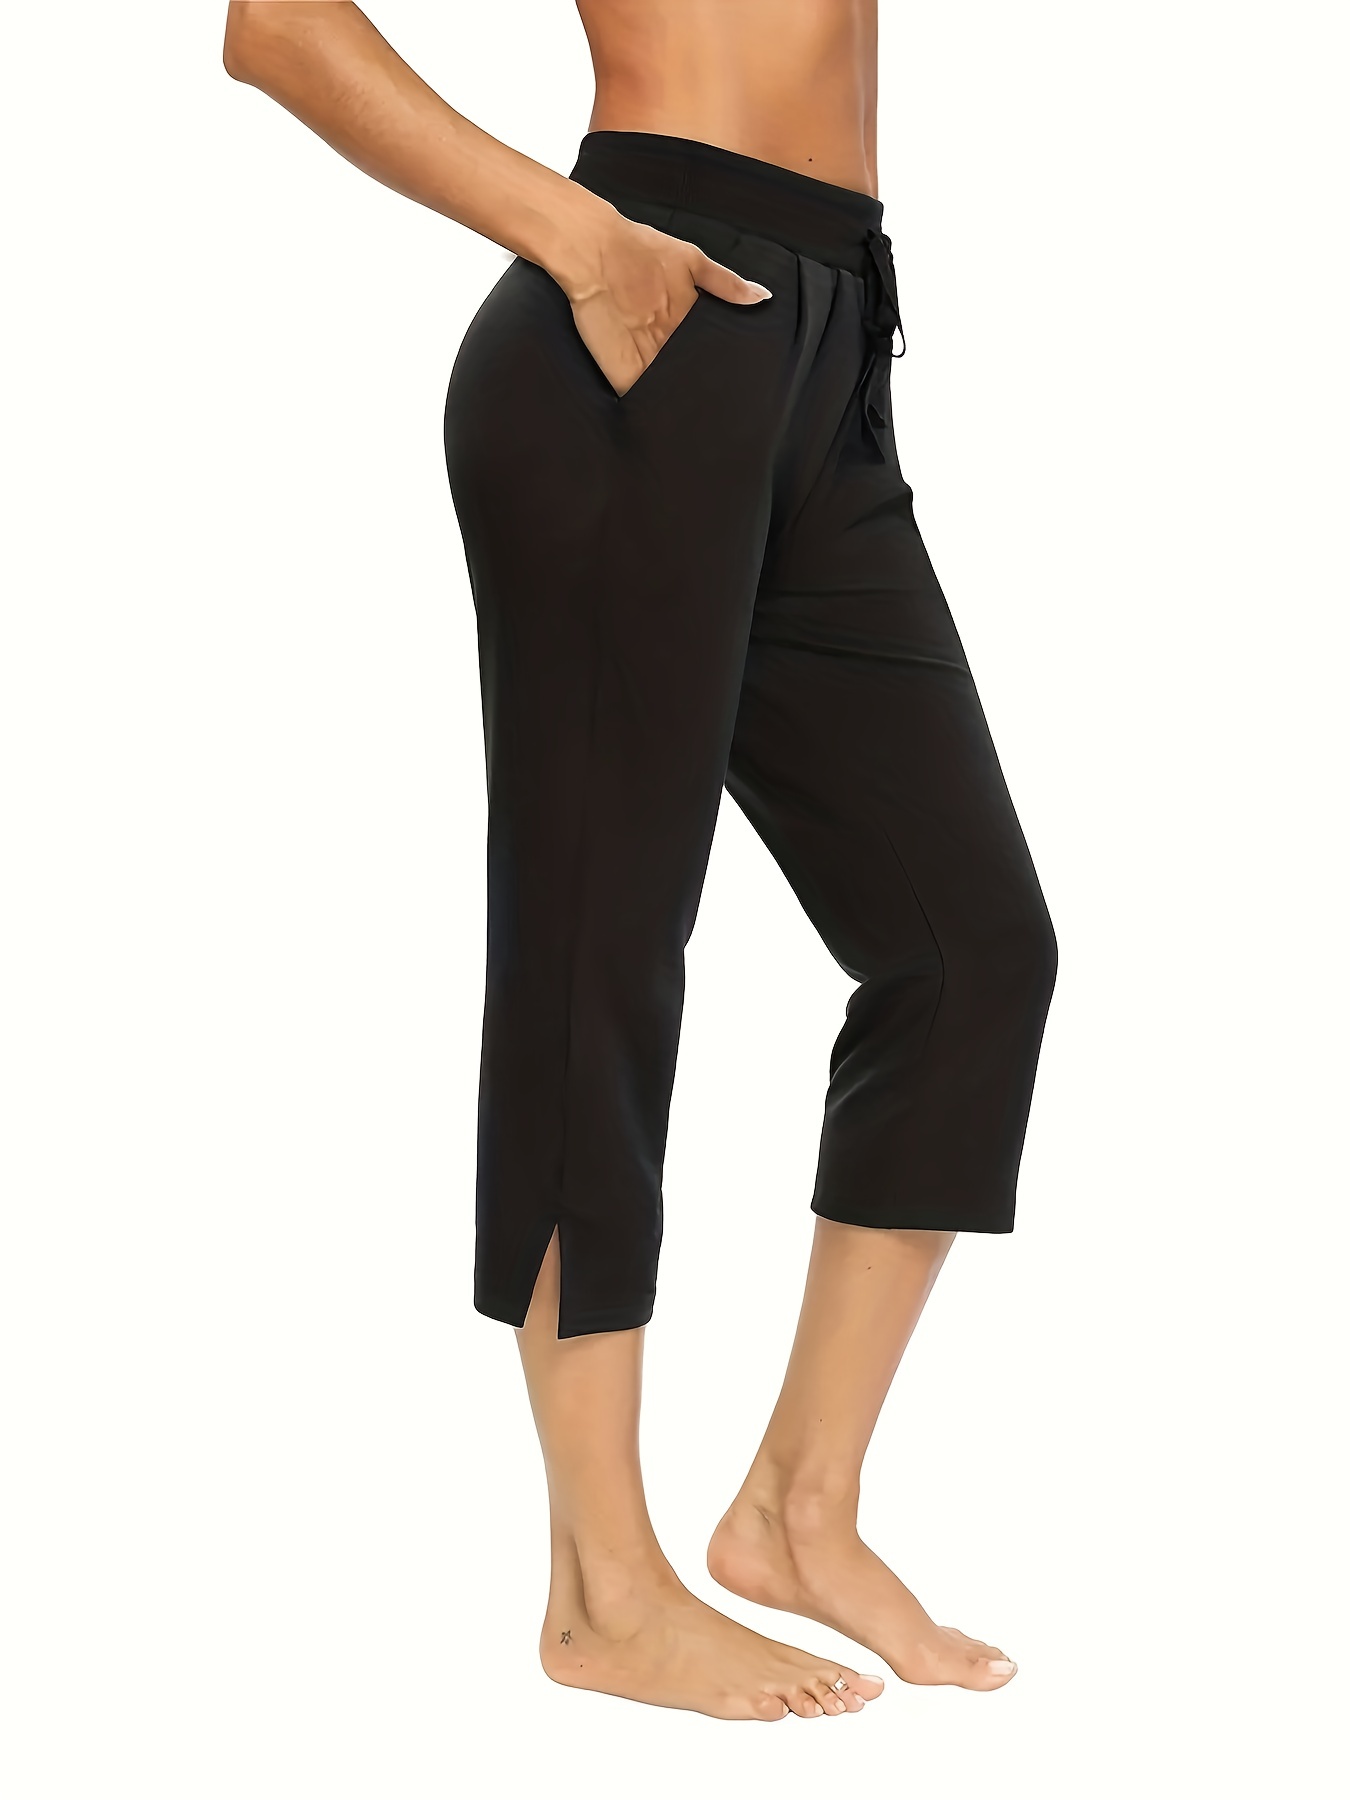 Brand Flex Women's Cotton Plain Capri, Capri Pants Loose Yoga